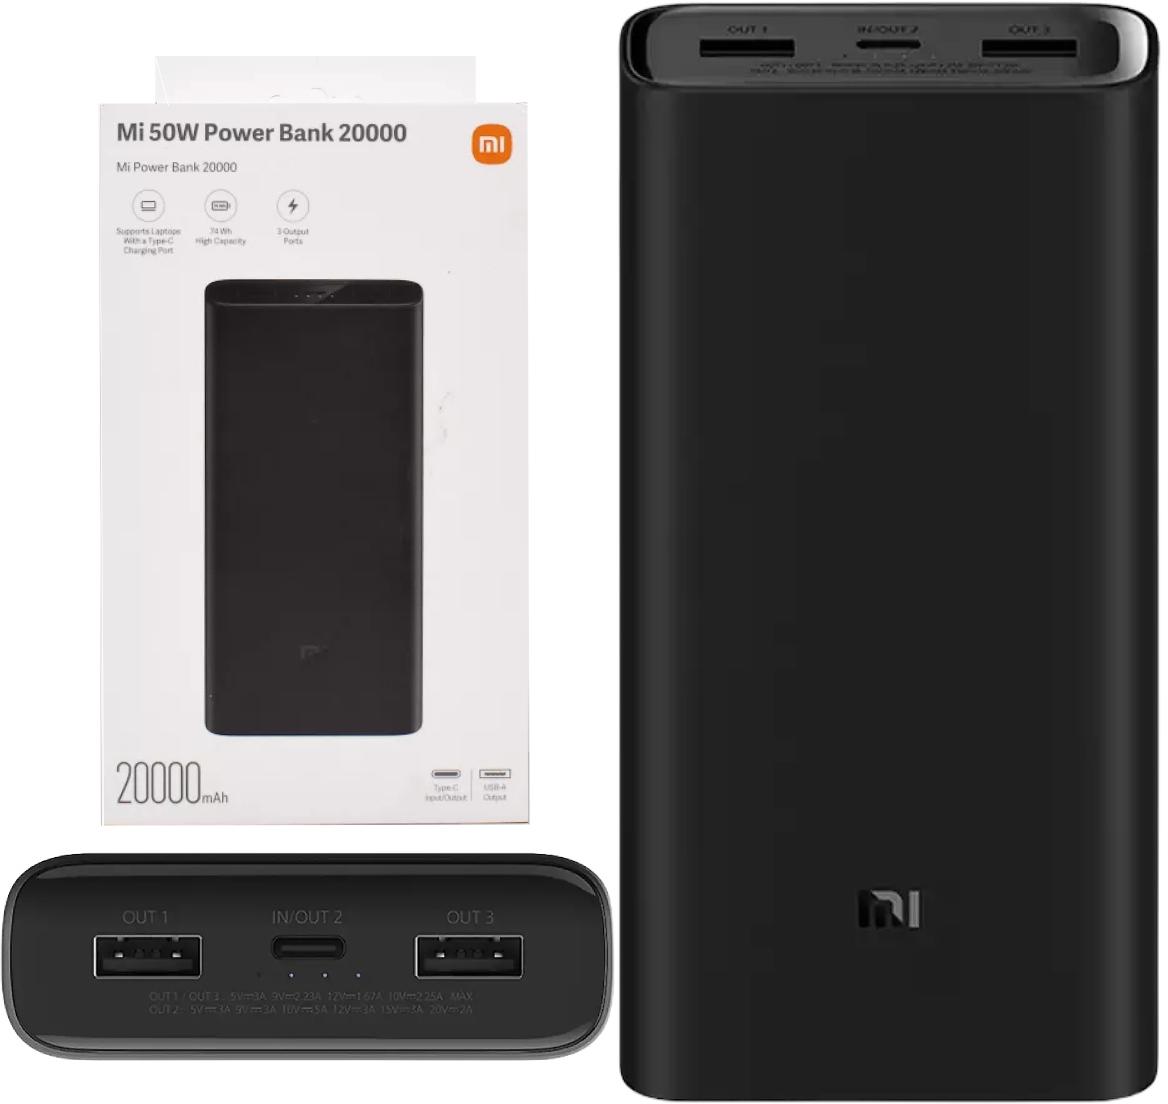 Powerbank Xiaomi Mi 50W Power Bank 20000 mAh - najważniejsze cechy urządzenia zasilającego: